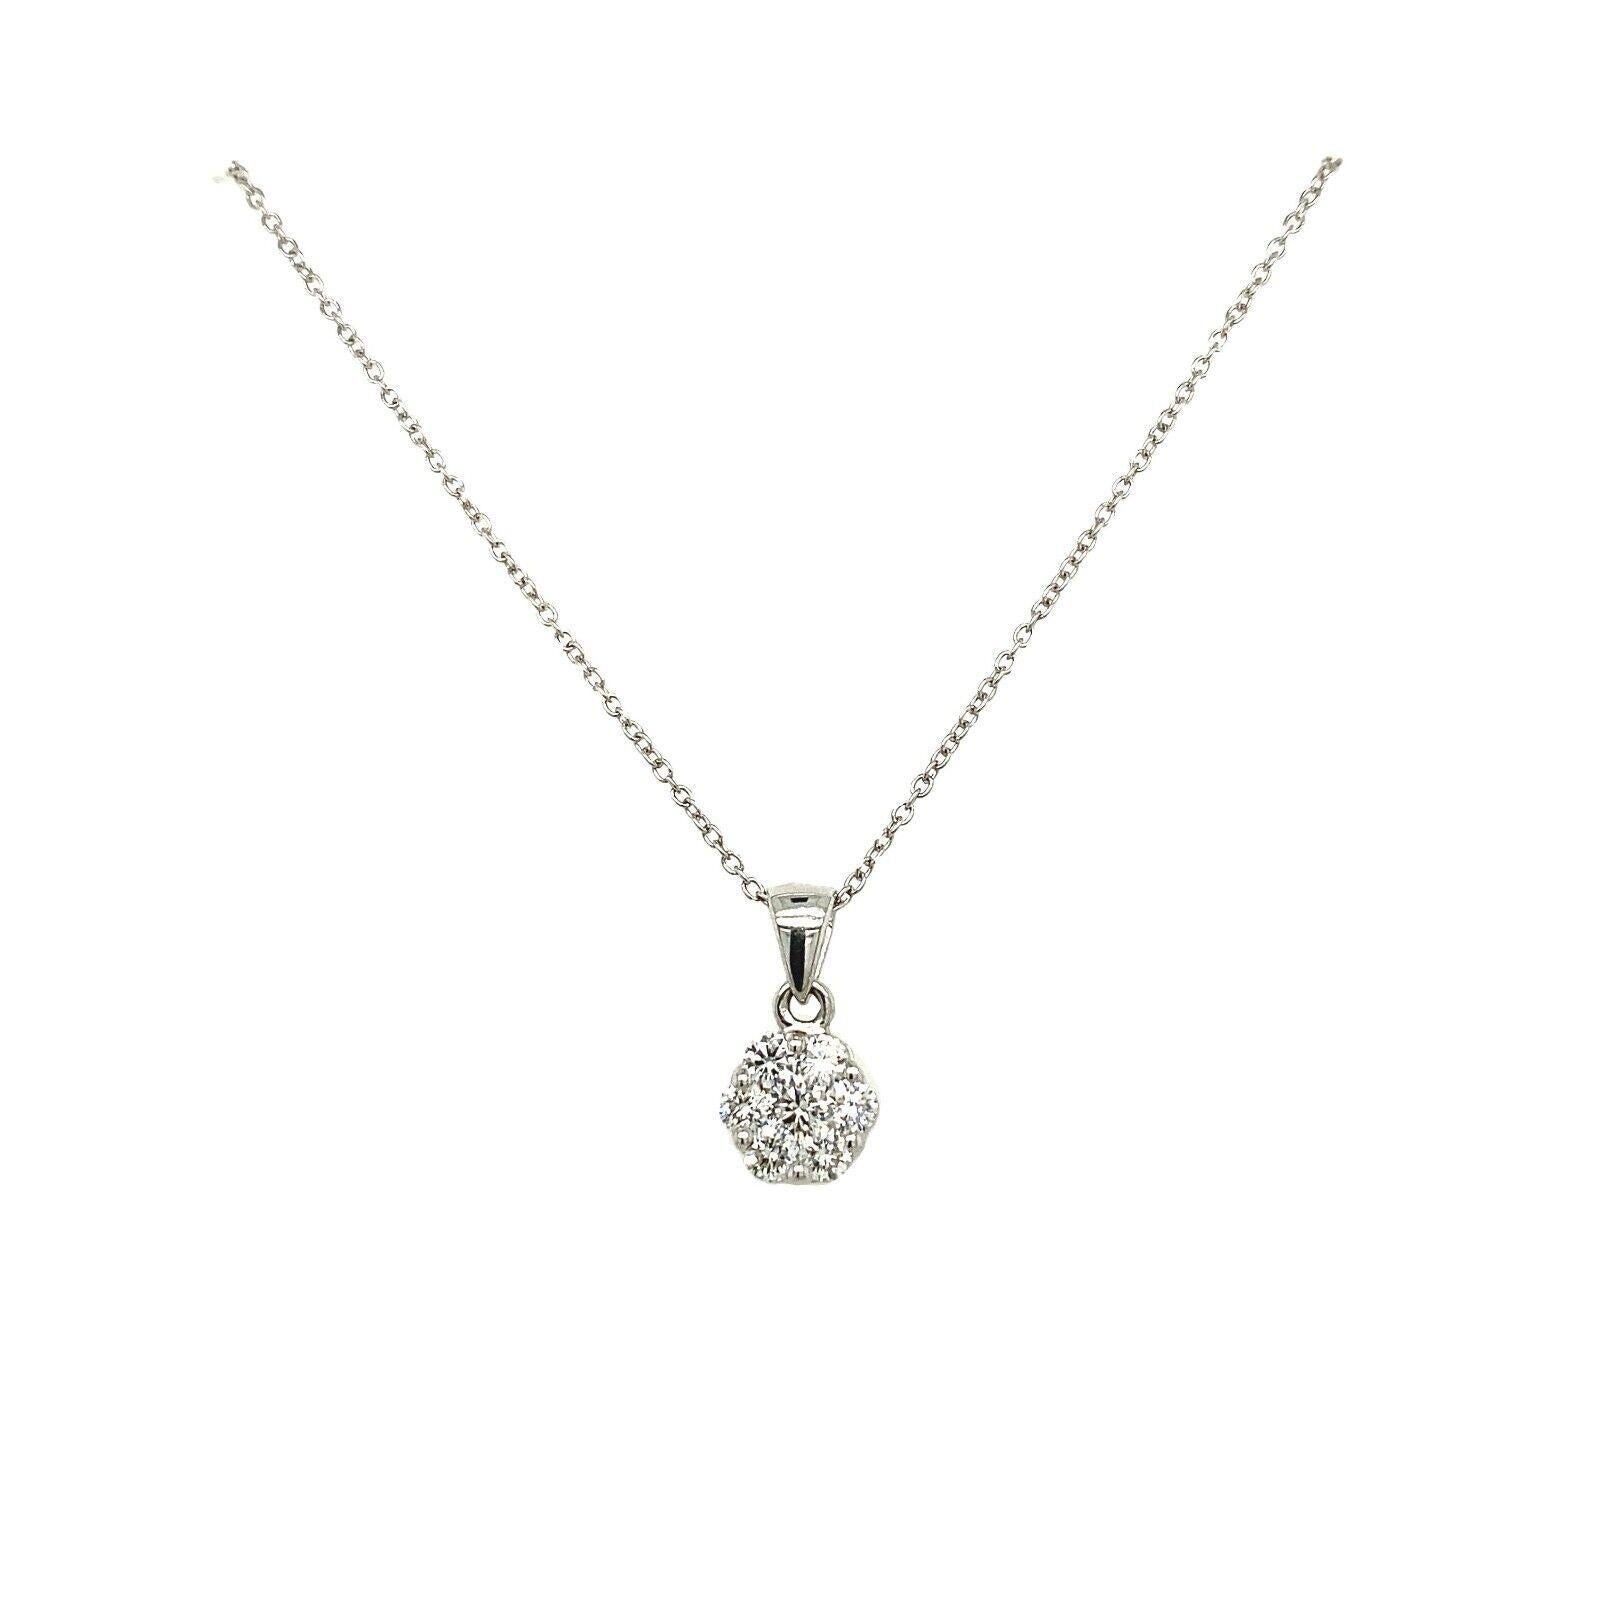 Eblouissant et charmant, ce magnifique pendentif en diamant est serti d'une grappe de diamants ronds de 0,25ct F/VS en platine. Le pendentif est suspendu à une chaîne en platine mesurant 16 pouces.

Informations supplémentaires :
Longueur de